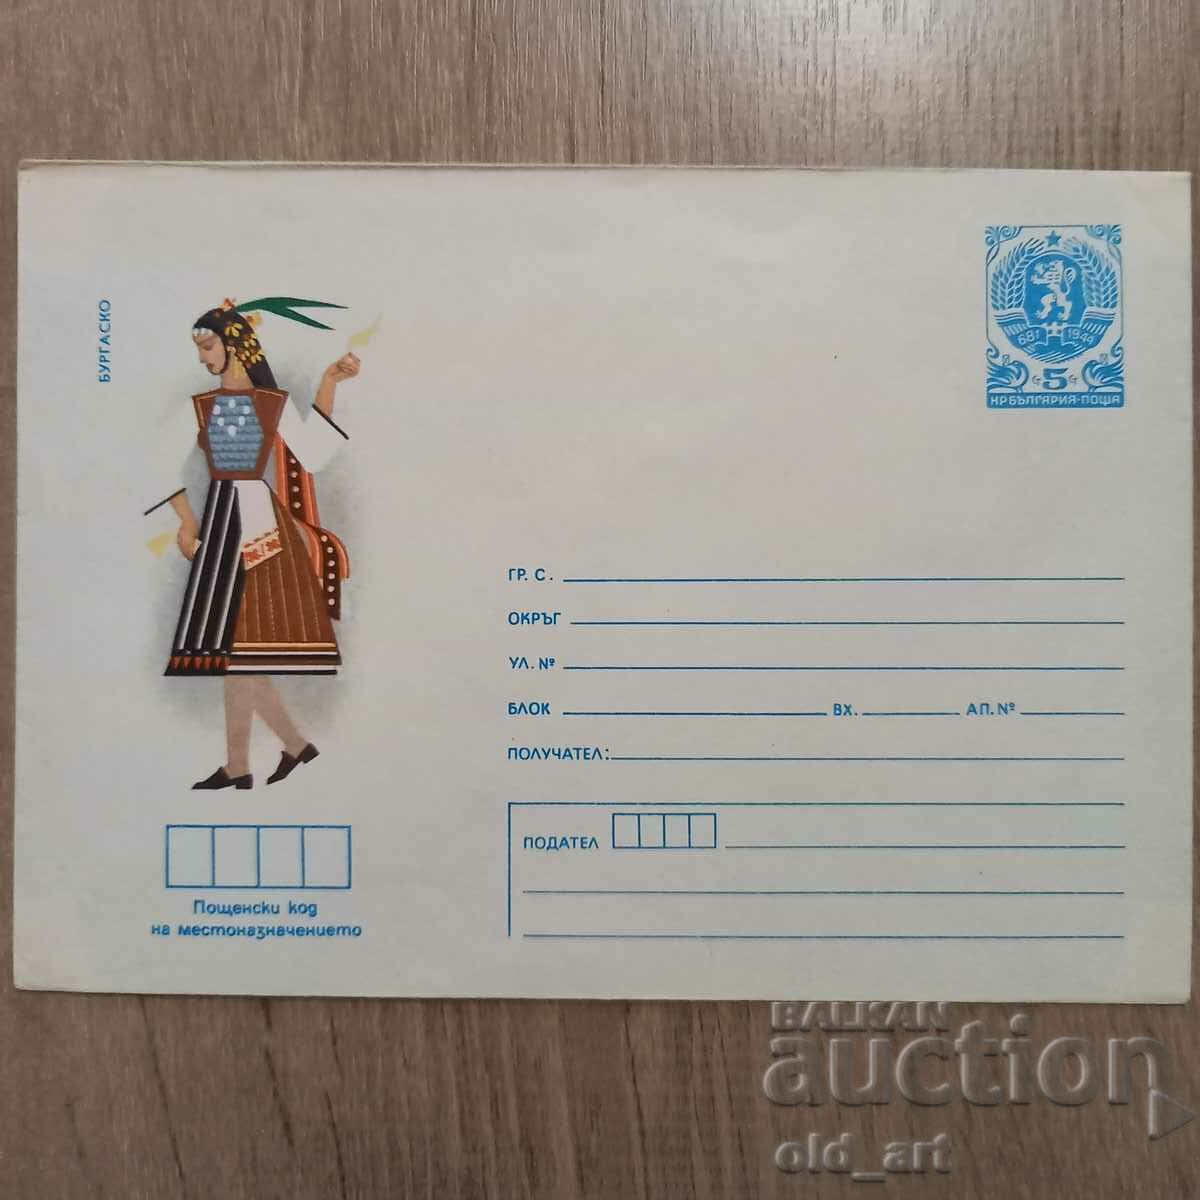 Ταχυδρομικός φάκελος - Λαϊκές φορεσιές - Μπουργκάς